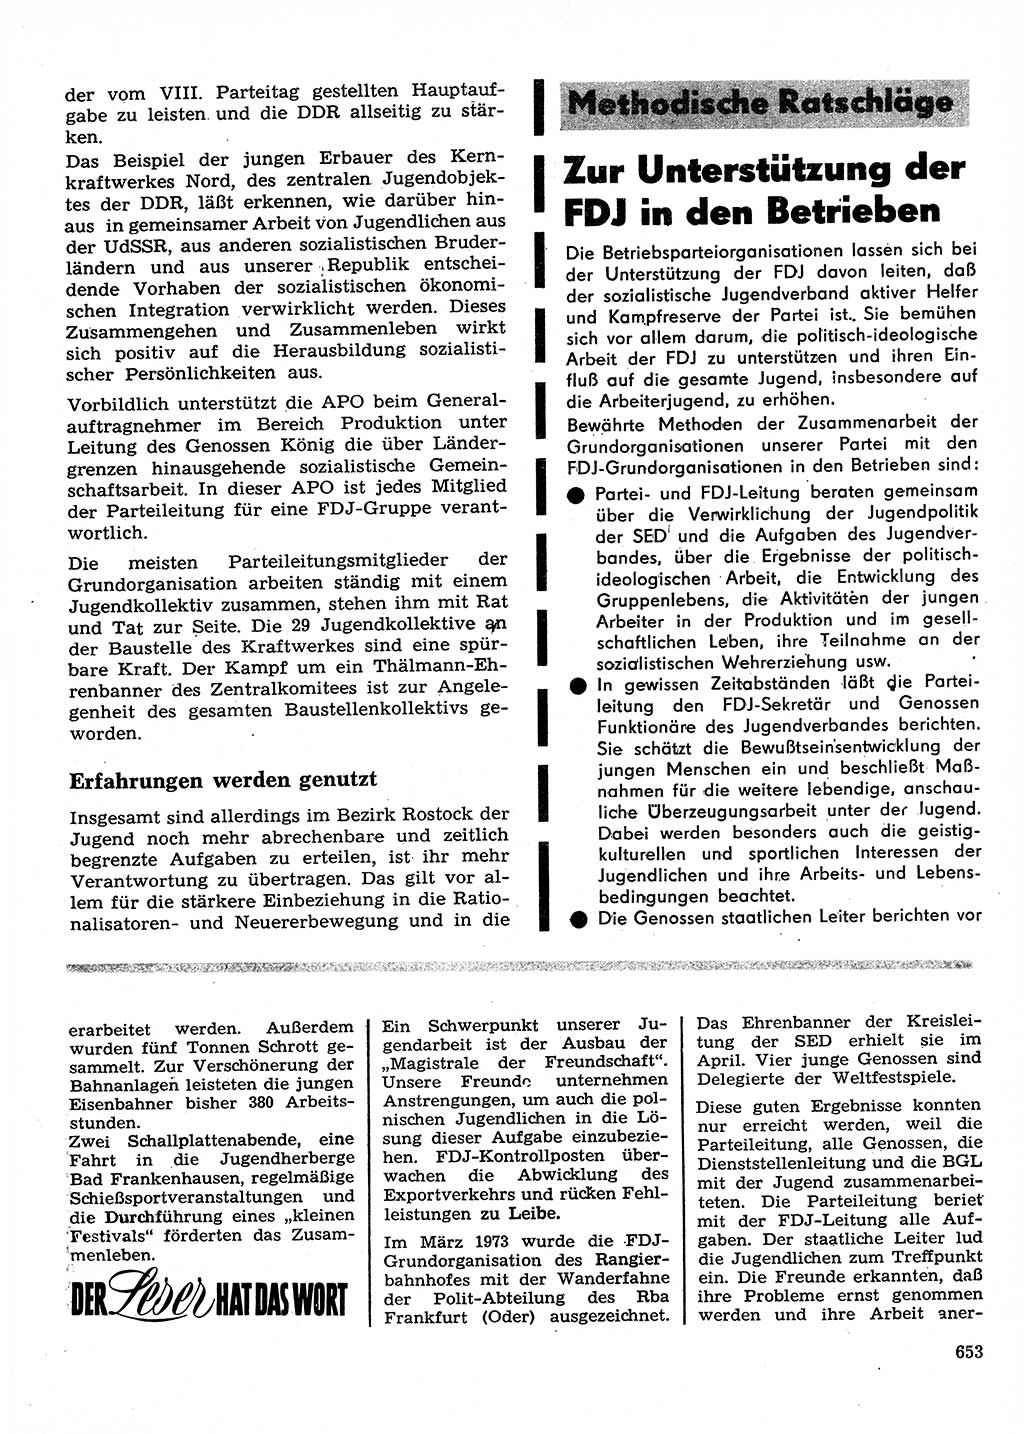 Neuer Weg (NW), Organ des Zentralkomitees (ZK) der SED (Sozialistische Einheitspartei Deutschlands) für Fragen des Parteilebens, 28. Jahrgang [Deutsche Demokratische Republik (DDR)] 1973, Seite 653 (NW ZK SED DDR 1973, S. 653)